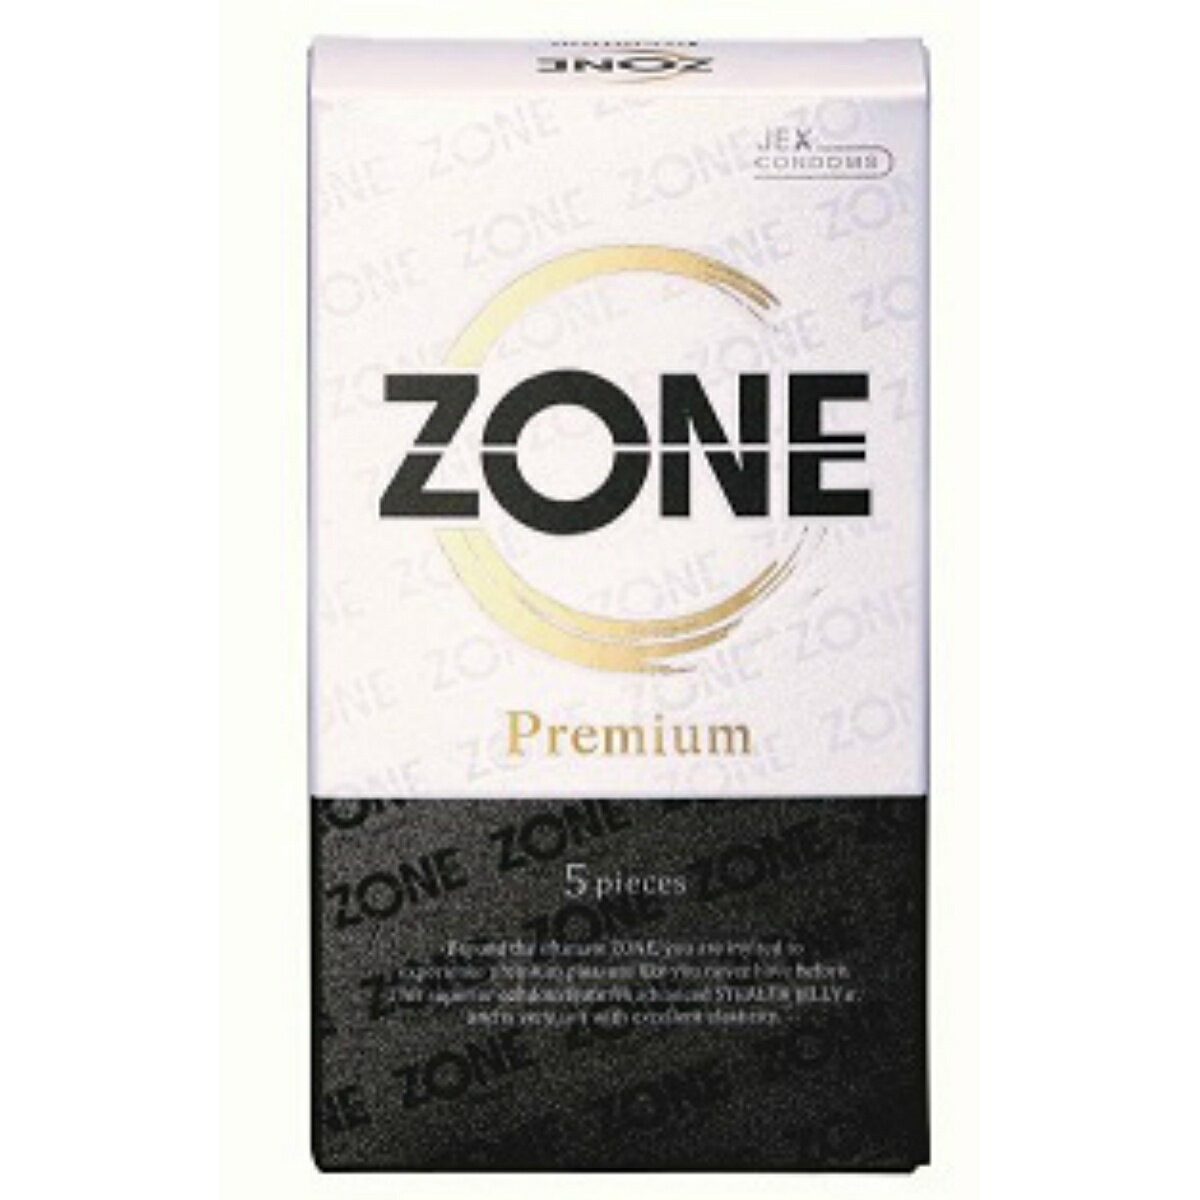 【夜の市★合算2千円超で送料無料対象】ジェクス ZONE Premium ゾーンプレミアム 5pieces